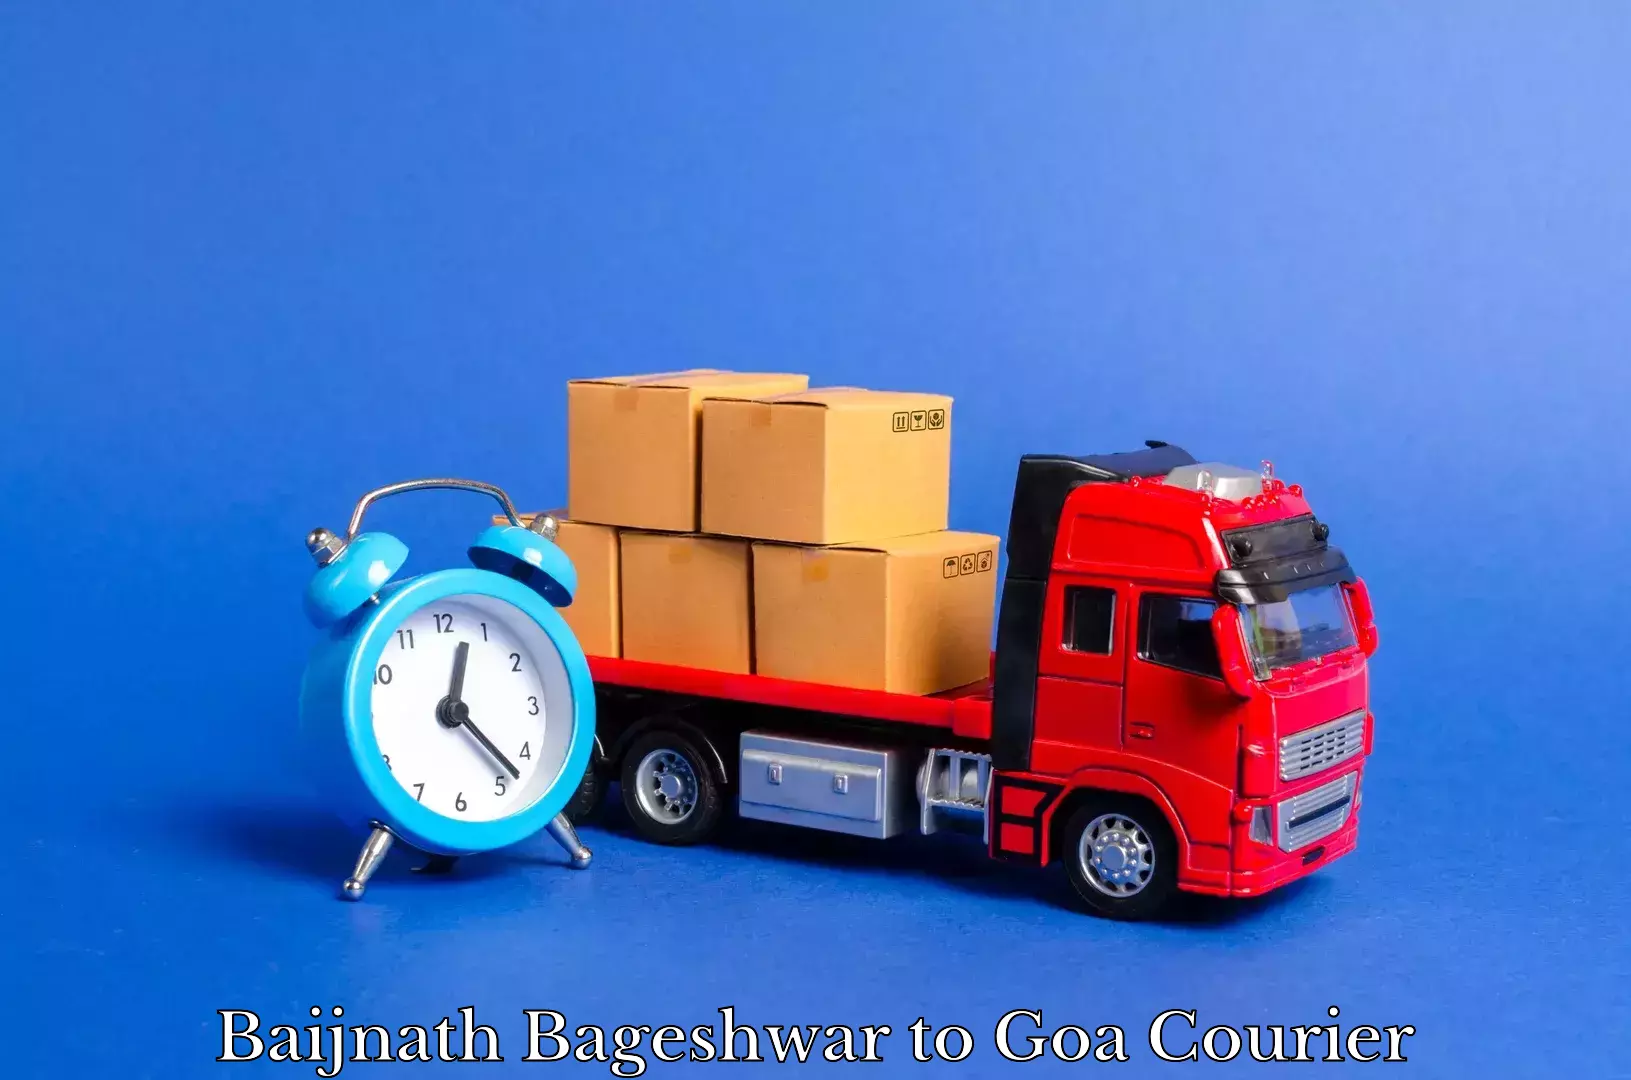 Furniture transport service Baijnath Bageshwar to Margao